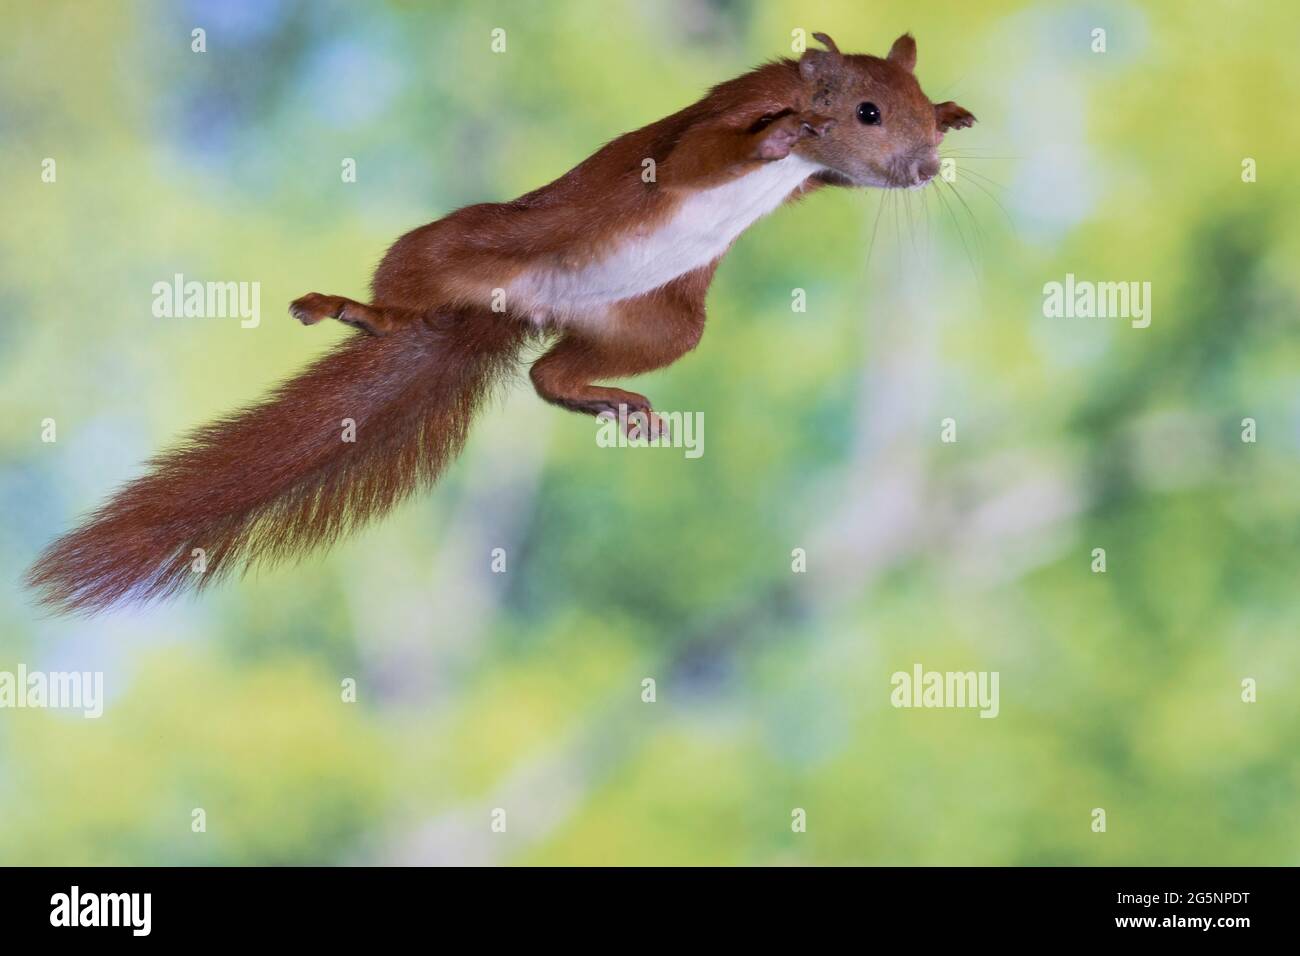 Europäisches Eichhörnchen, Eurasisches Eichhörnchen, Eichhörnchen, im Sprung, Flug, springend, Sciurus vulgaris, European red squirrel, red squirrel, Stock Photo